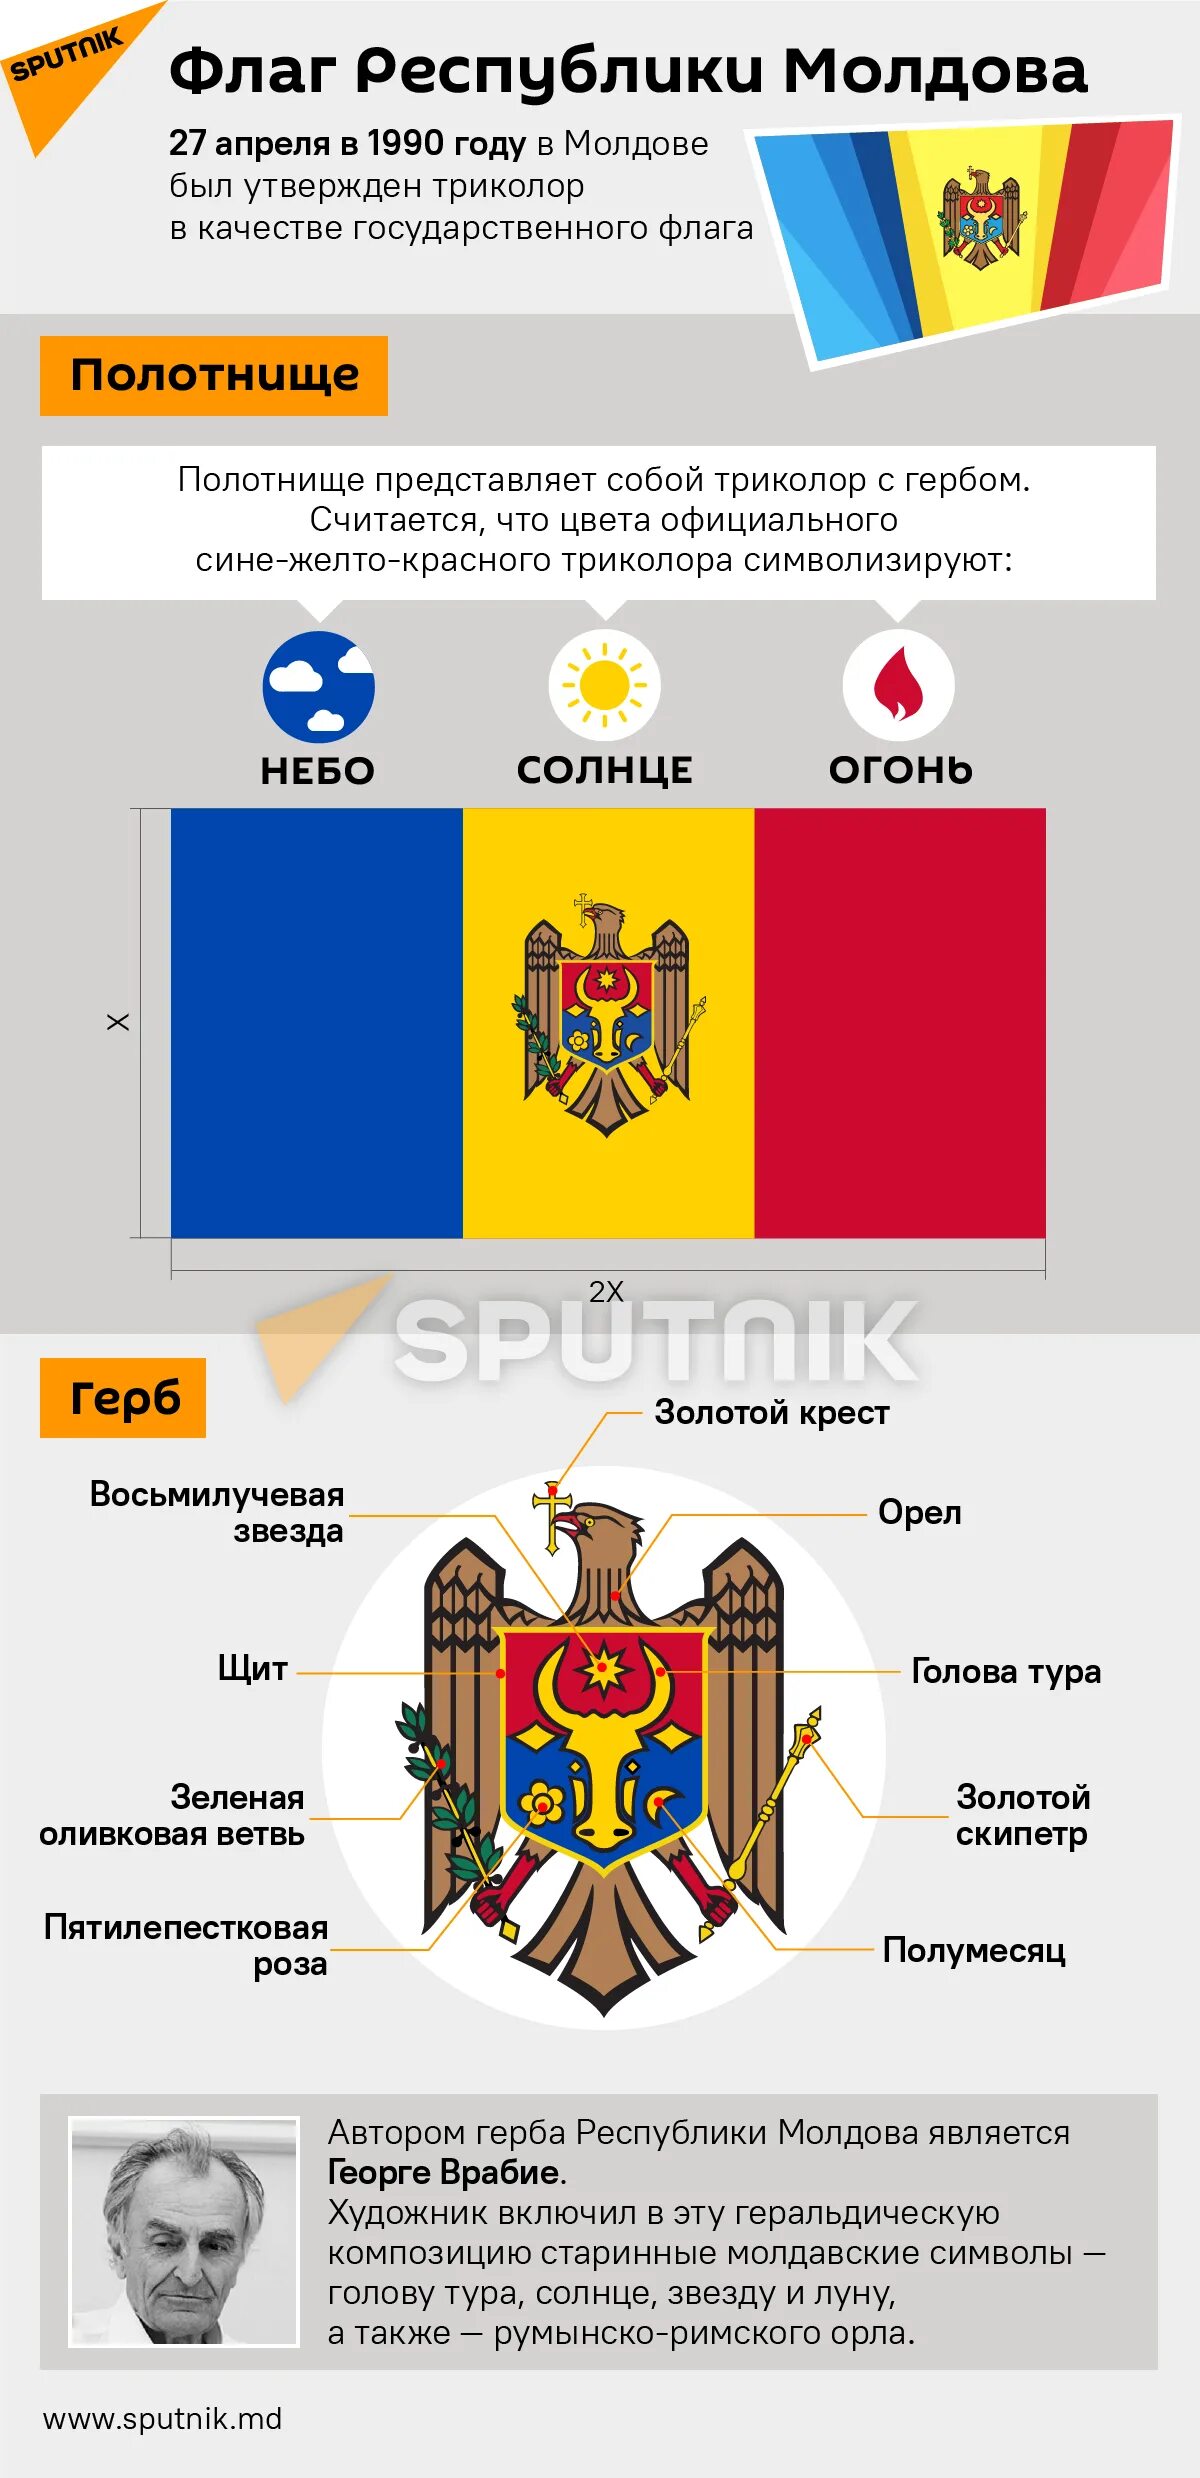 Молдаване как правильно. Флаг Молдовы 1990. Флаг Молдавии по 1859 году. Флаг Республики Молдова. Герб Республики Молдова.